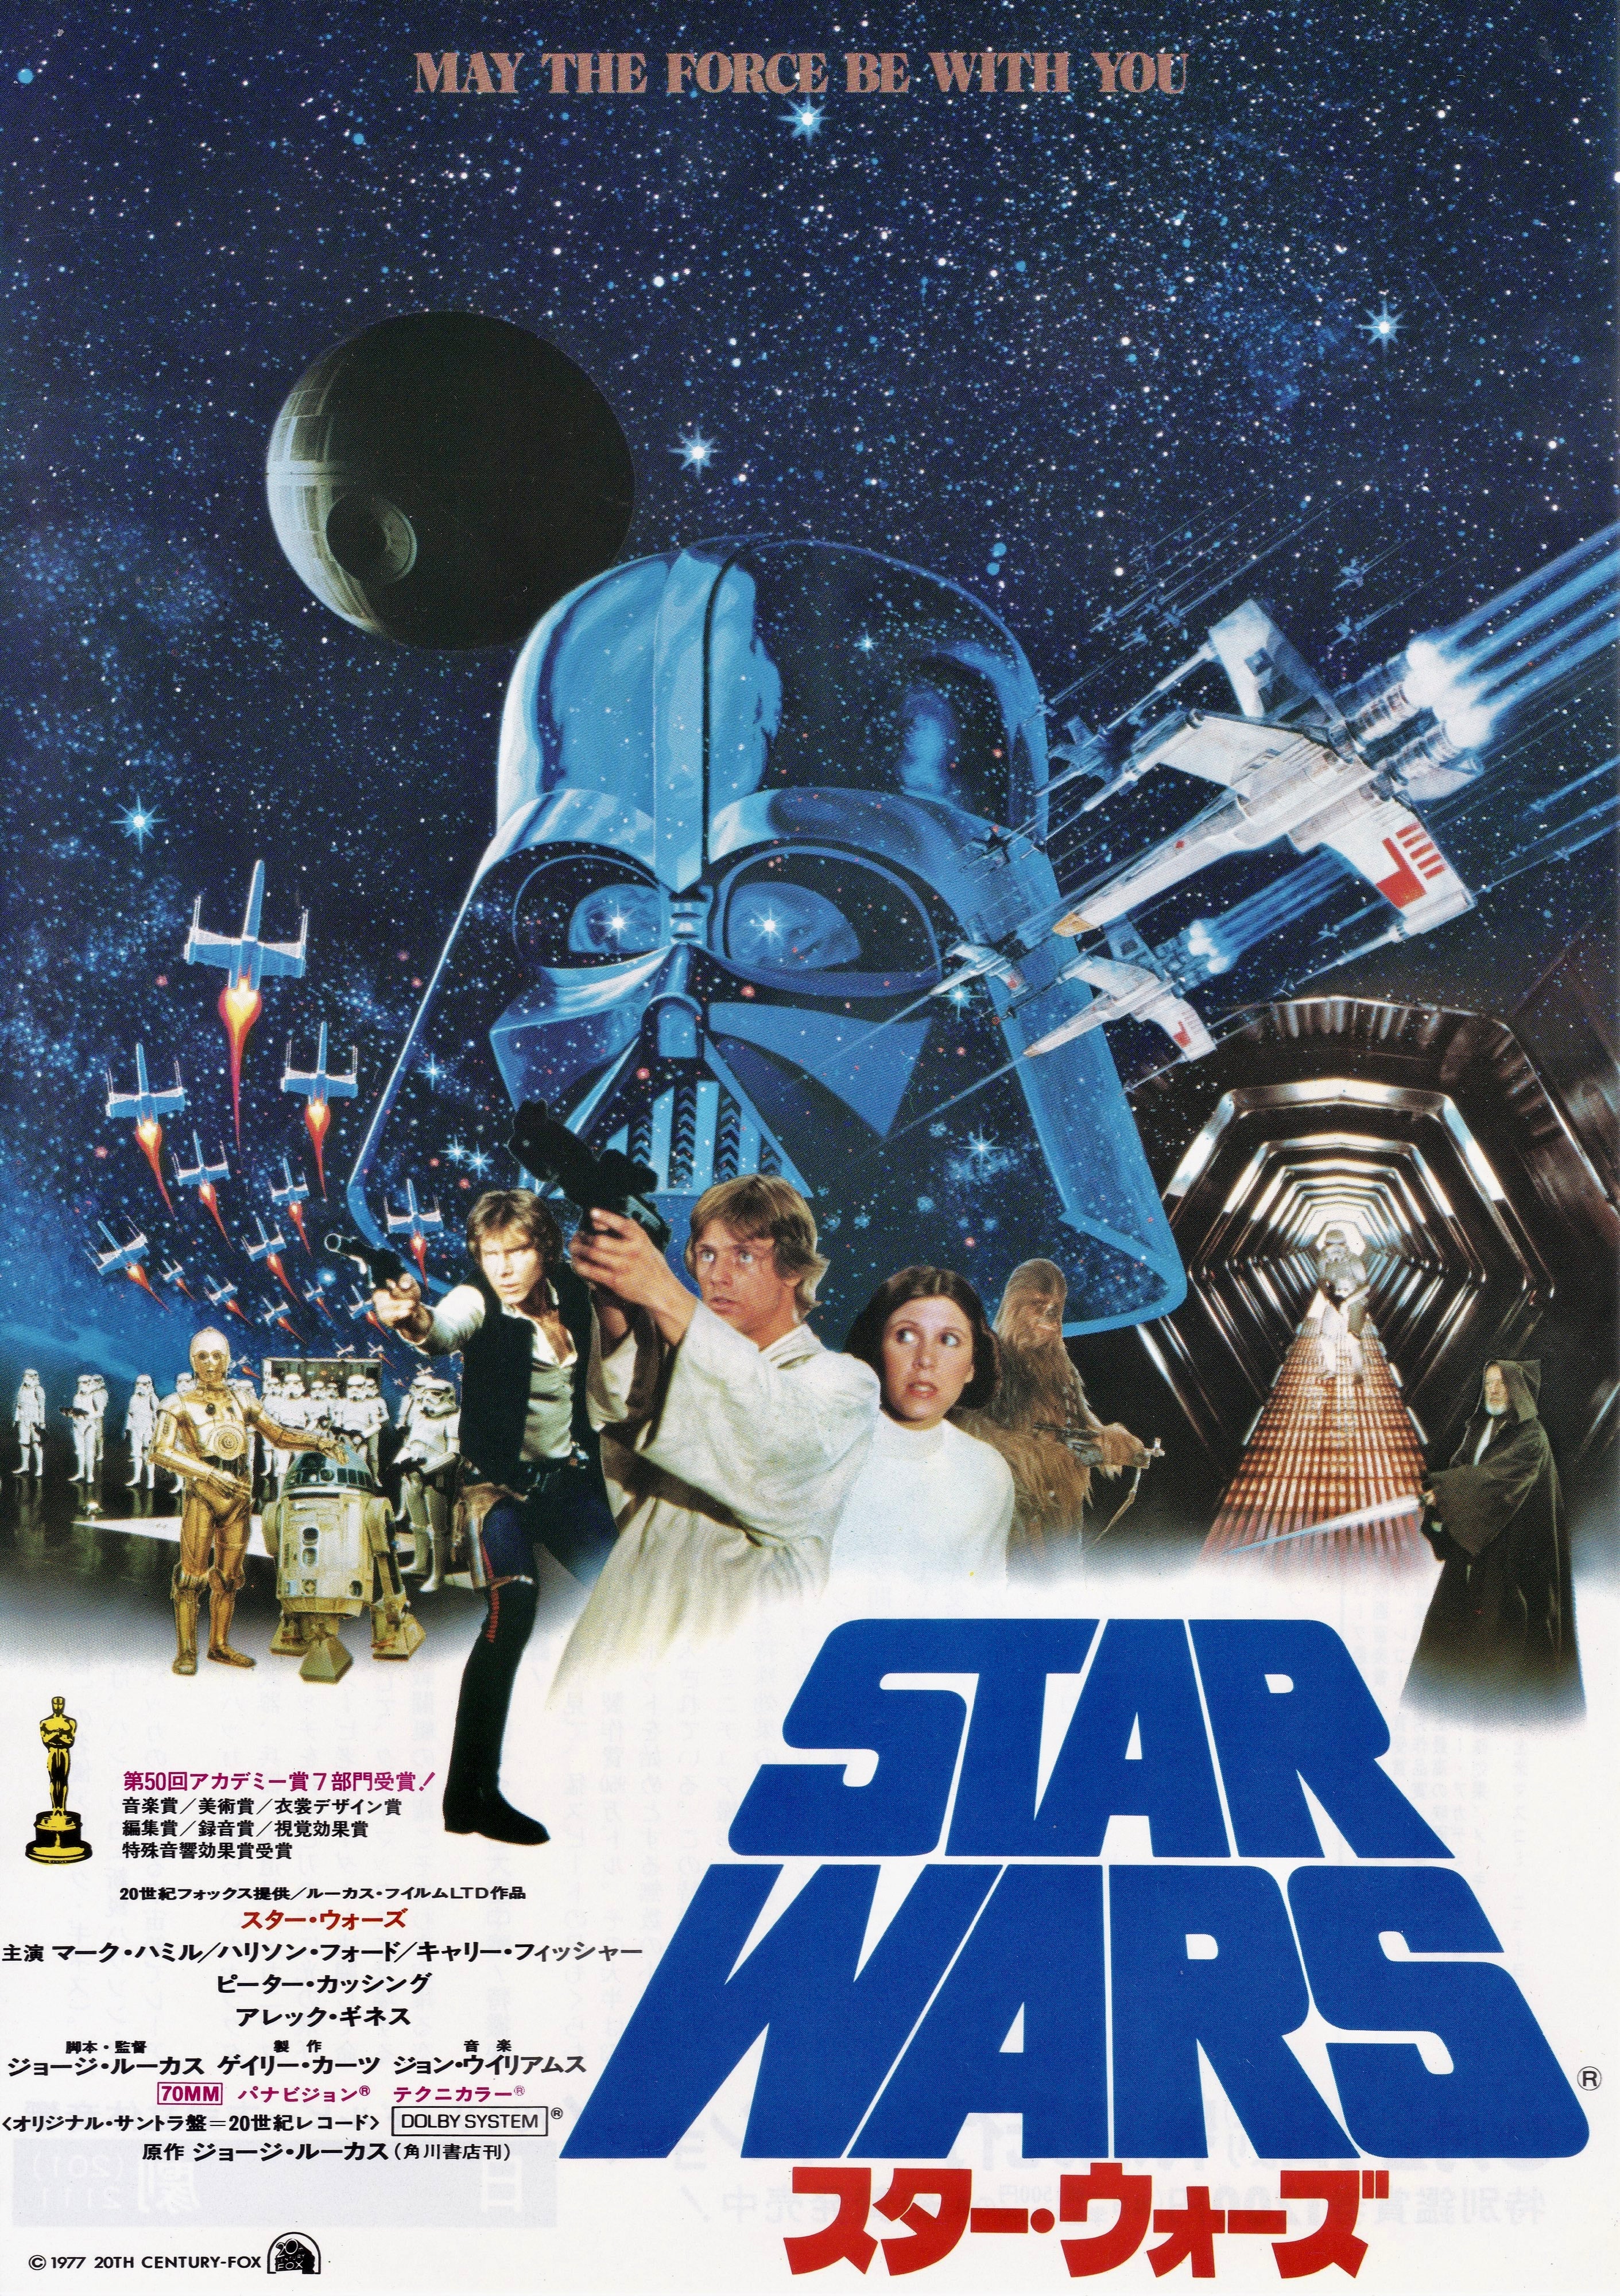 General 2822x4000 Star Wars Luke Skywalker Darth Vader Leia Organa Japanese Art A New Hope movies movie characters George Lucas